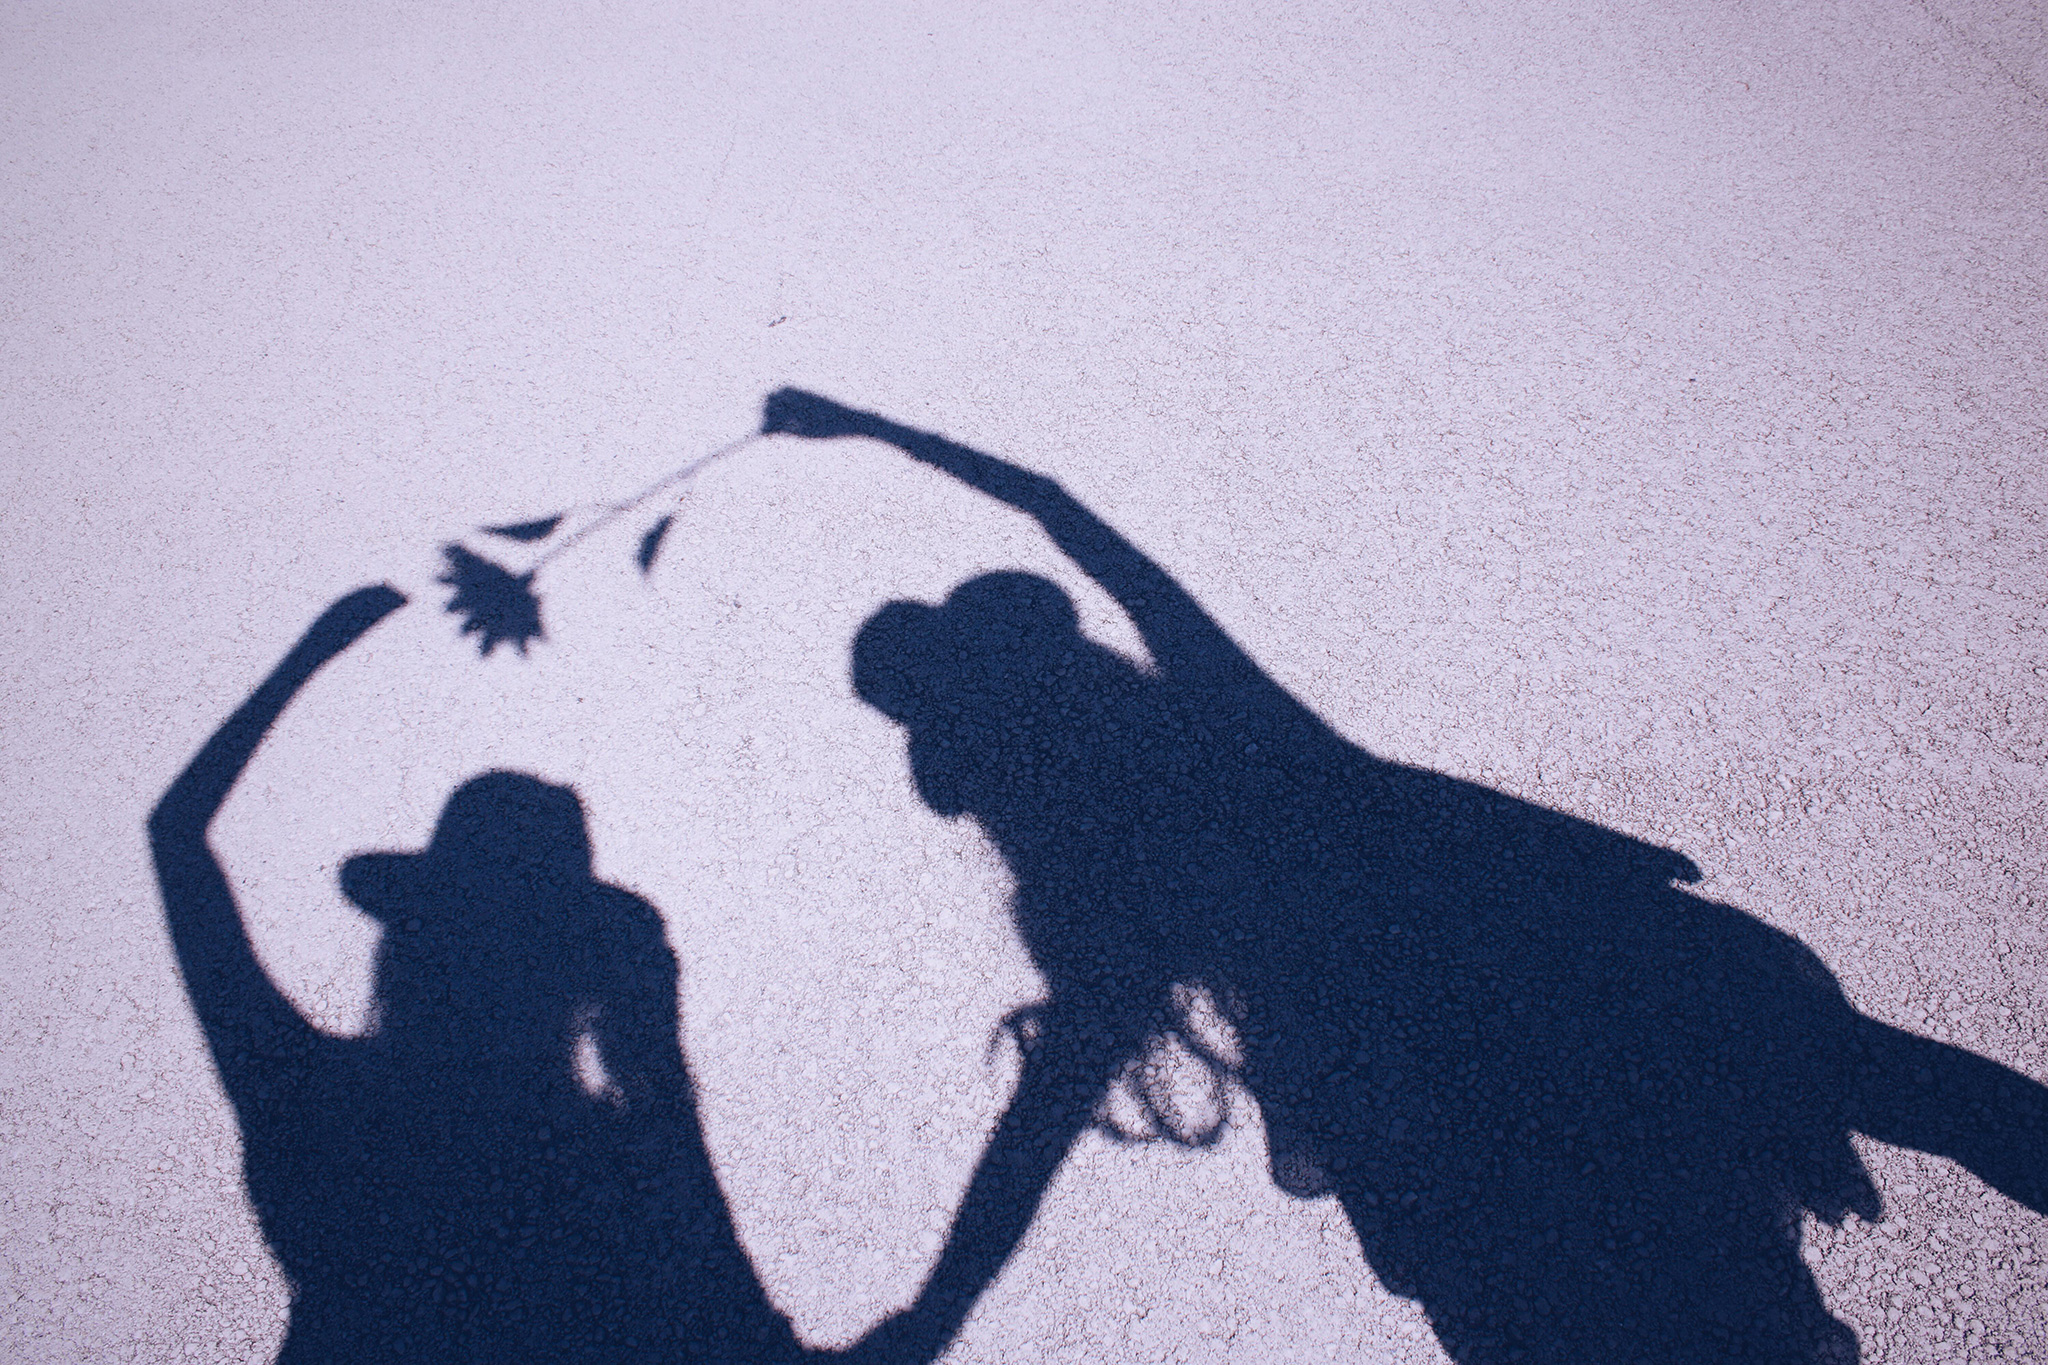 太陽の下 自分たちの影で遊ぶ双子の女の子たちのフリー画像 おしゃれなフリー写真素材 Girly Drop